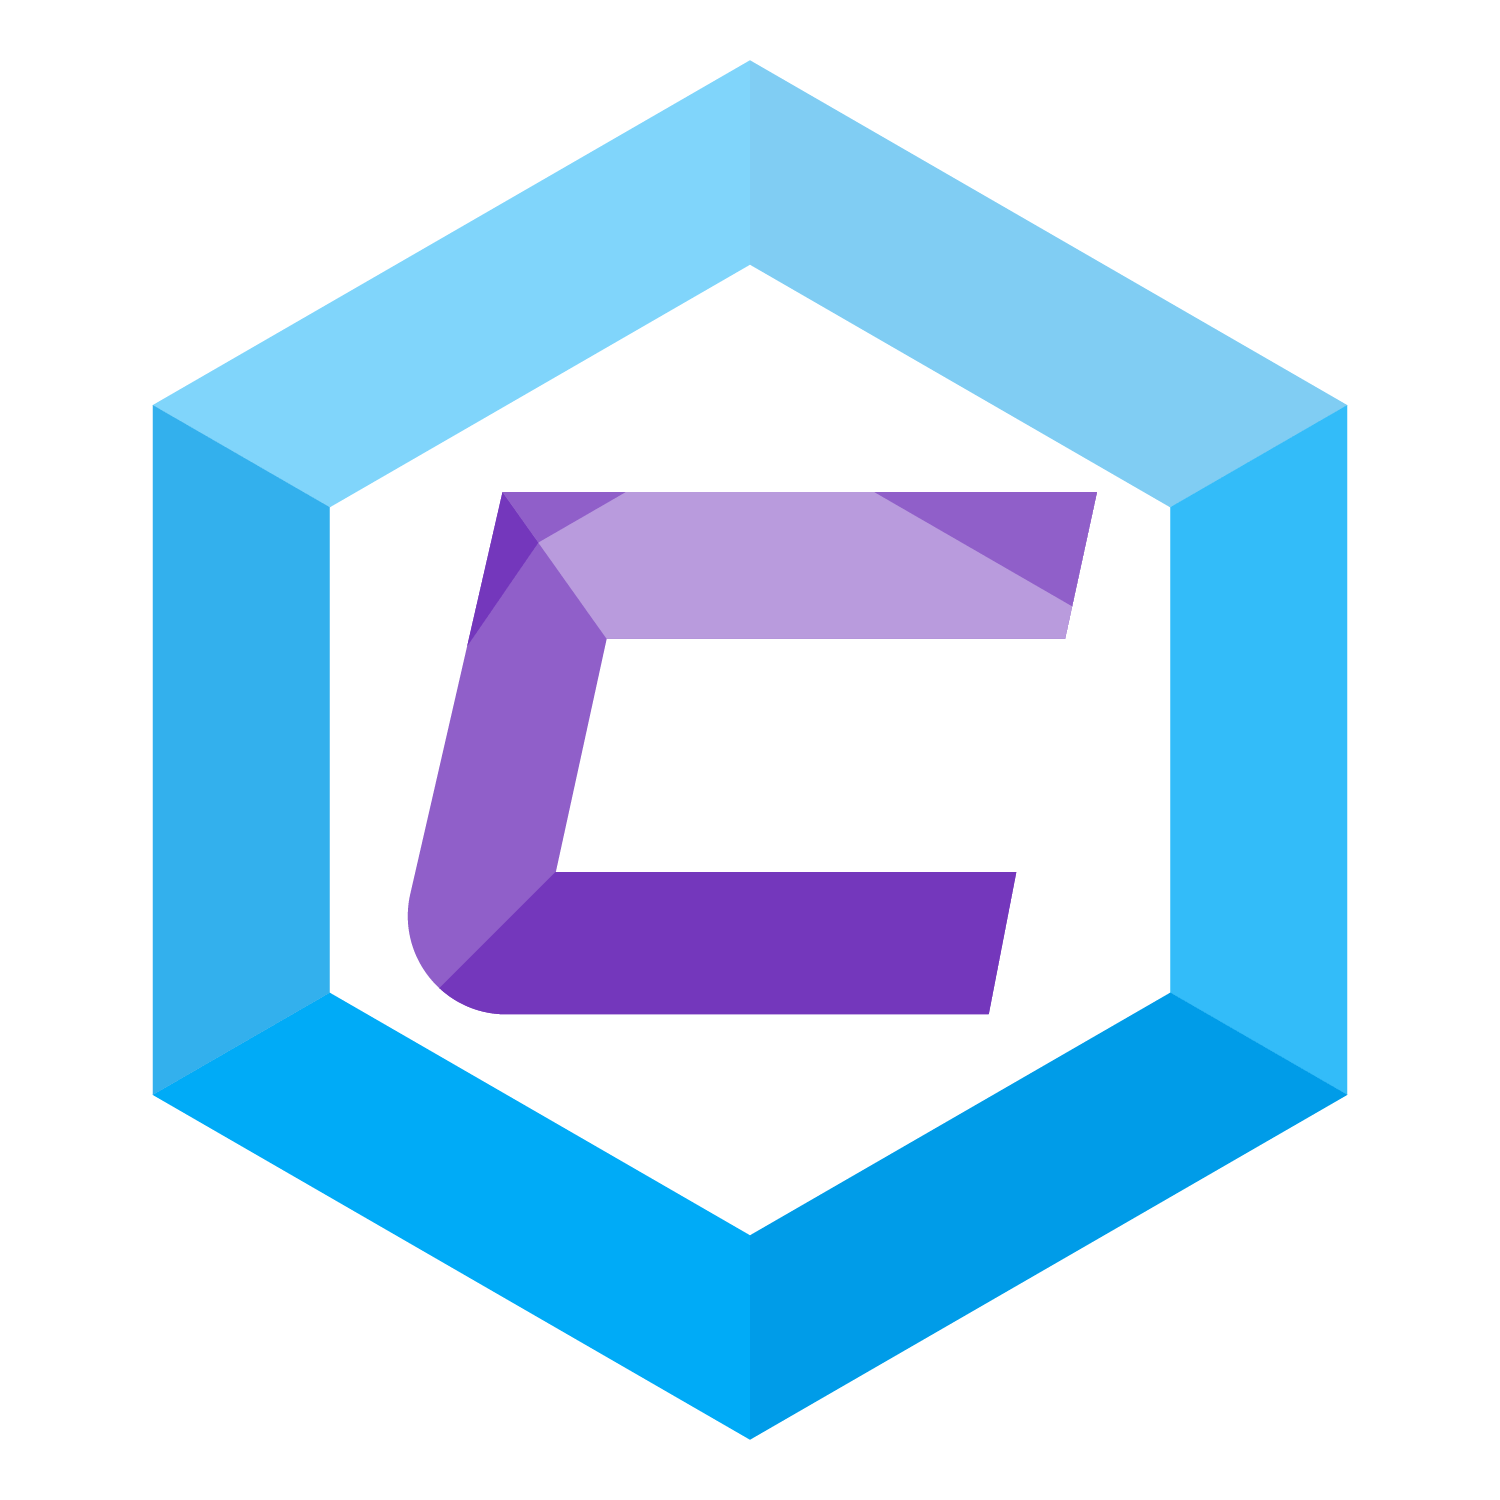 C Gaming Logo - Create A Gaming S Logo Png Image